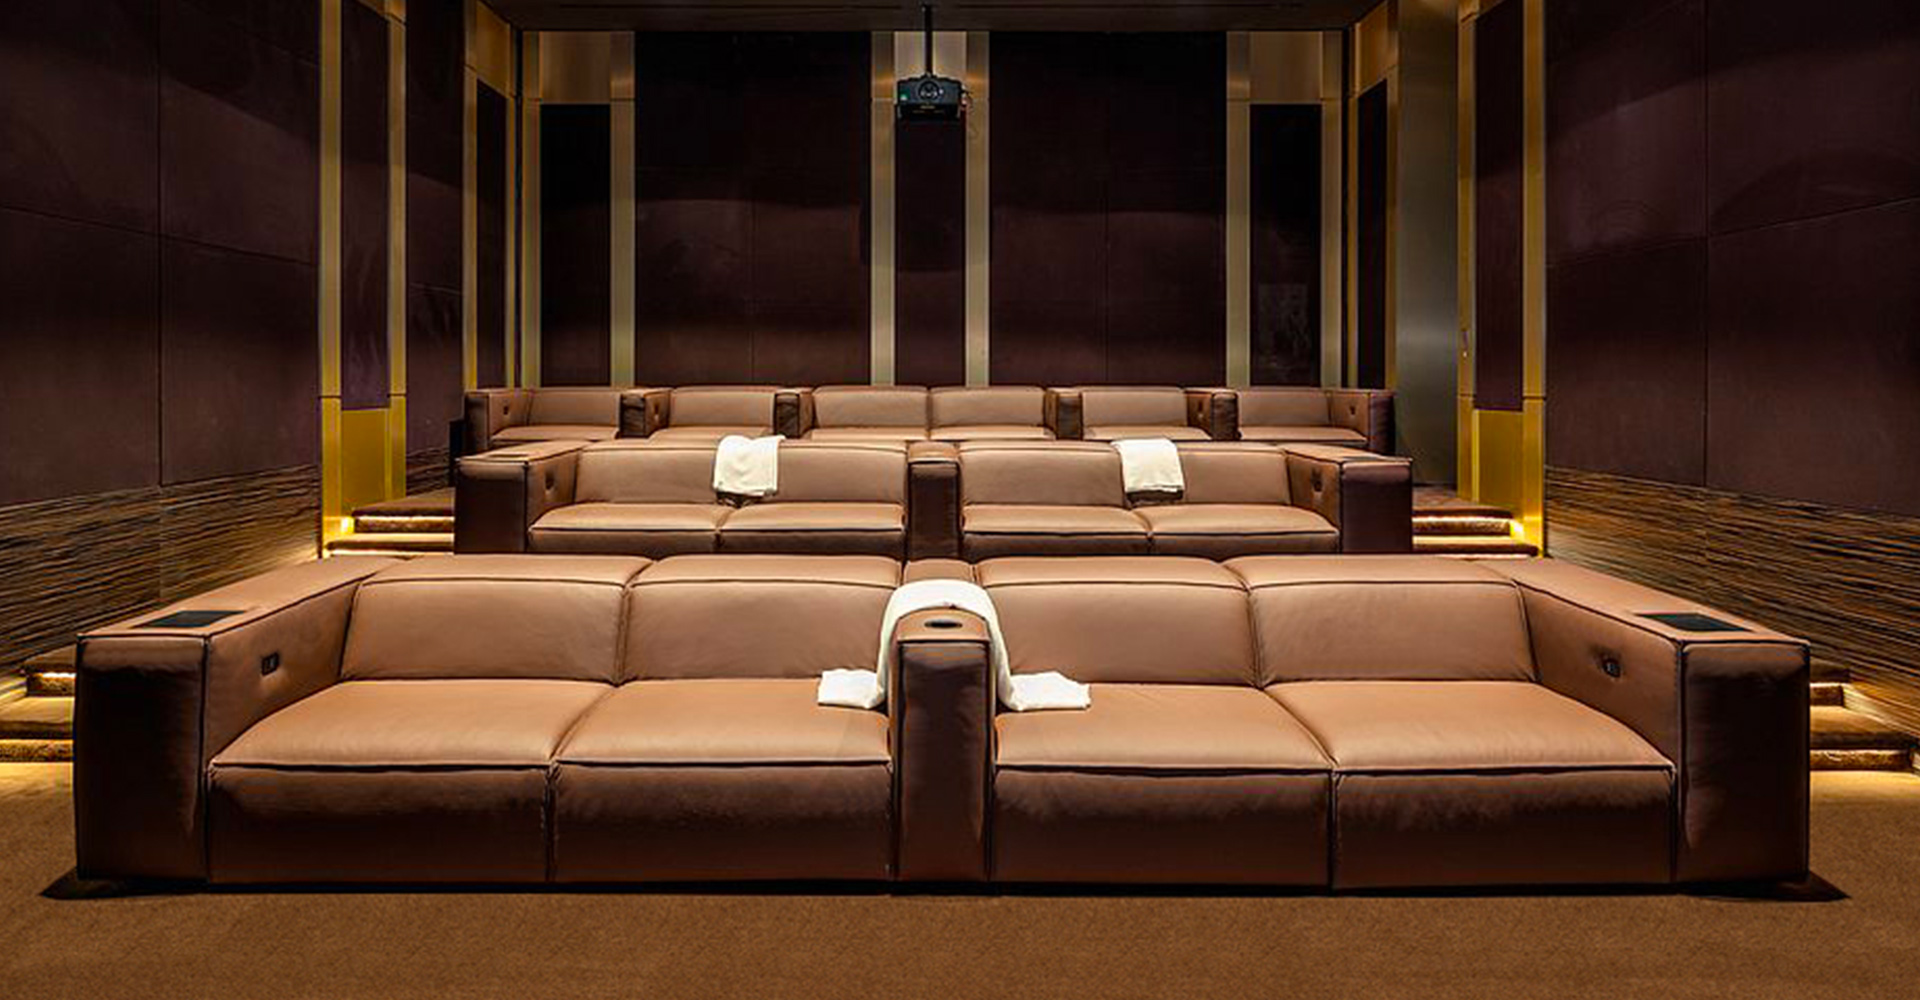 Gramercy - luxury home cinema theater - modern - @skylinedevelopmentla @centurionlv